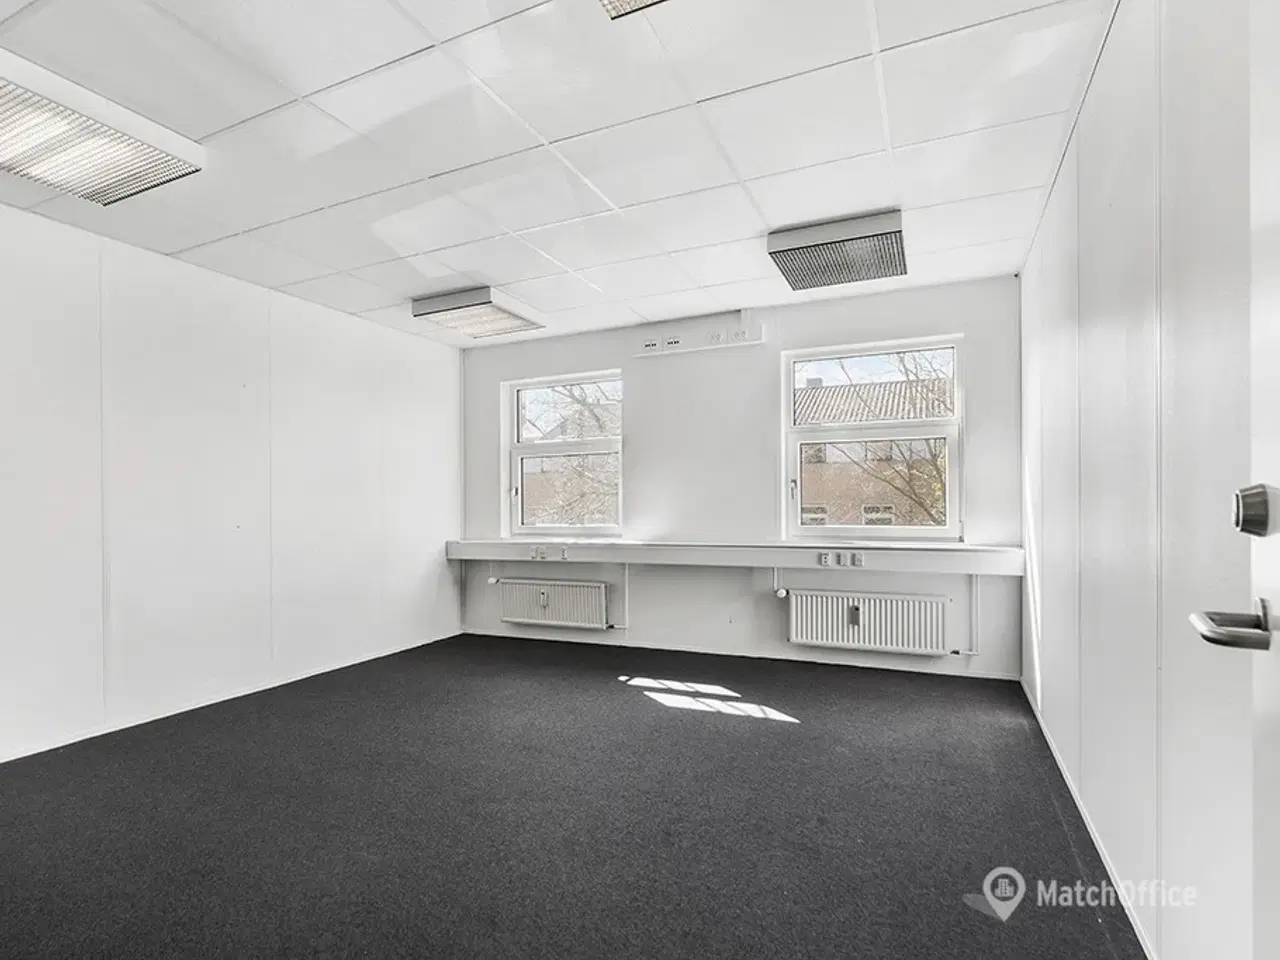 Billede 5 - Velindrettet kontorlejemål med mødelokale på 367 m2 tilbydes i præsentabel ejendom med central placering i Gladsaxe Erhvervsby.